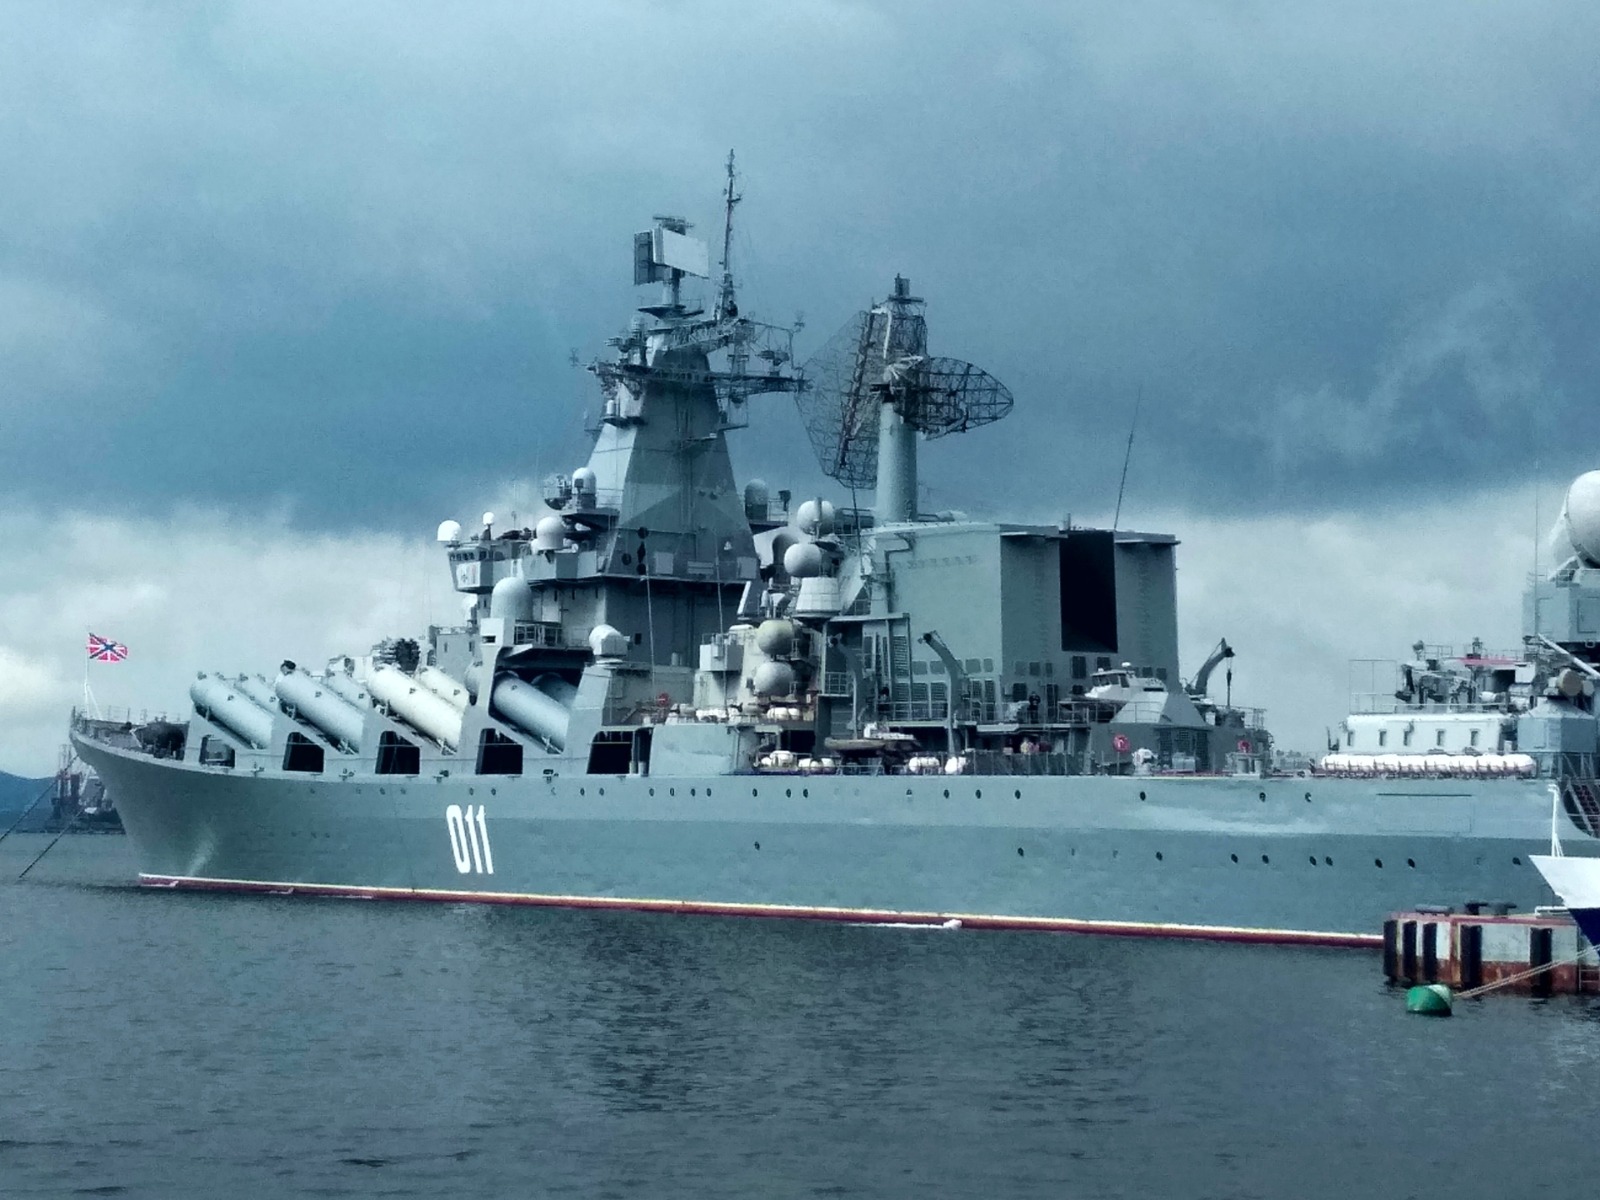 Флагман Тихоокеанского флота, ракетный крейсер "Варяг", на Корабельной набережной  